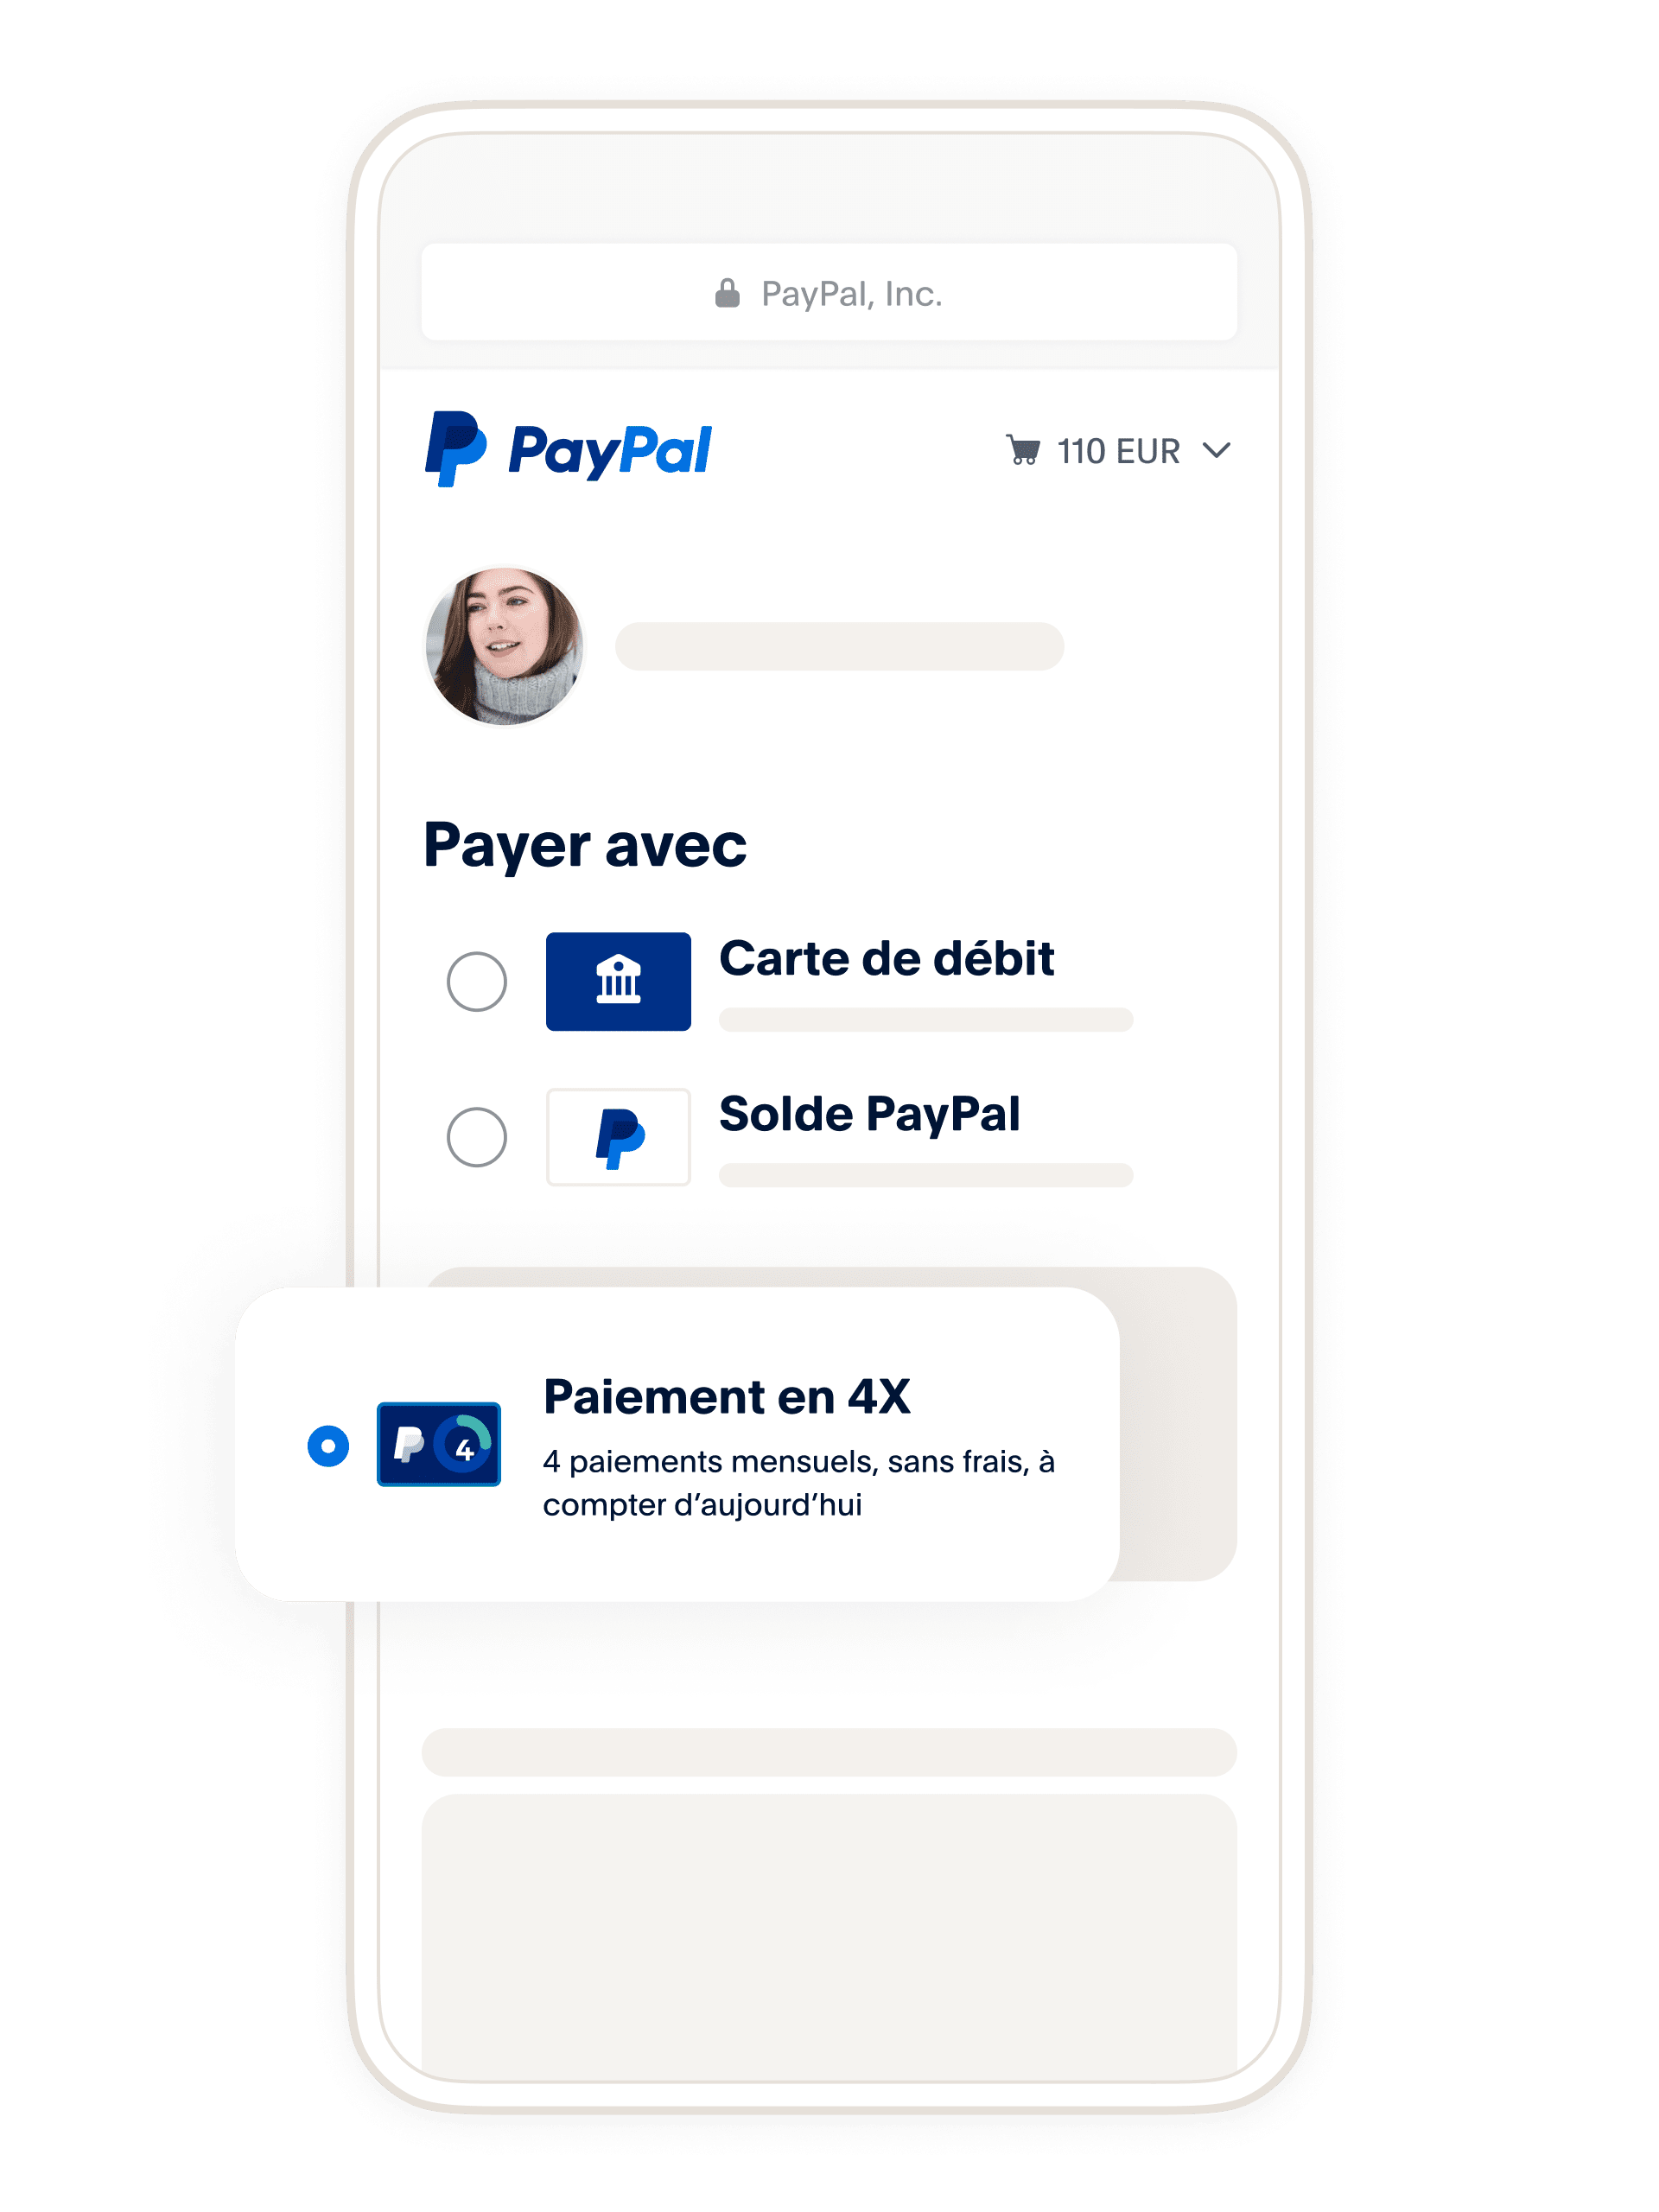 Achetez maintenant, payez plus tard avec PayPal, Paiement en 4X